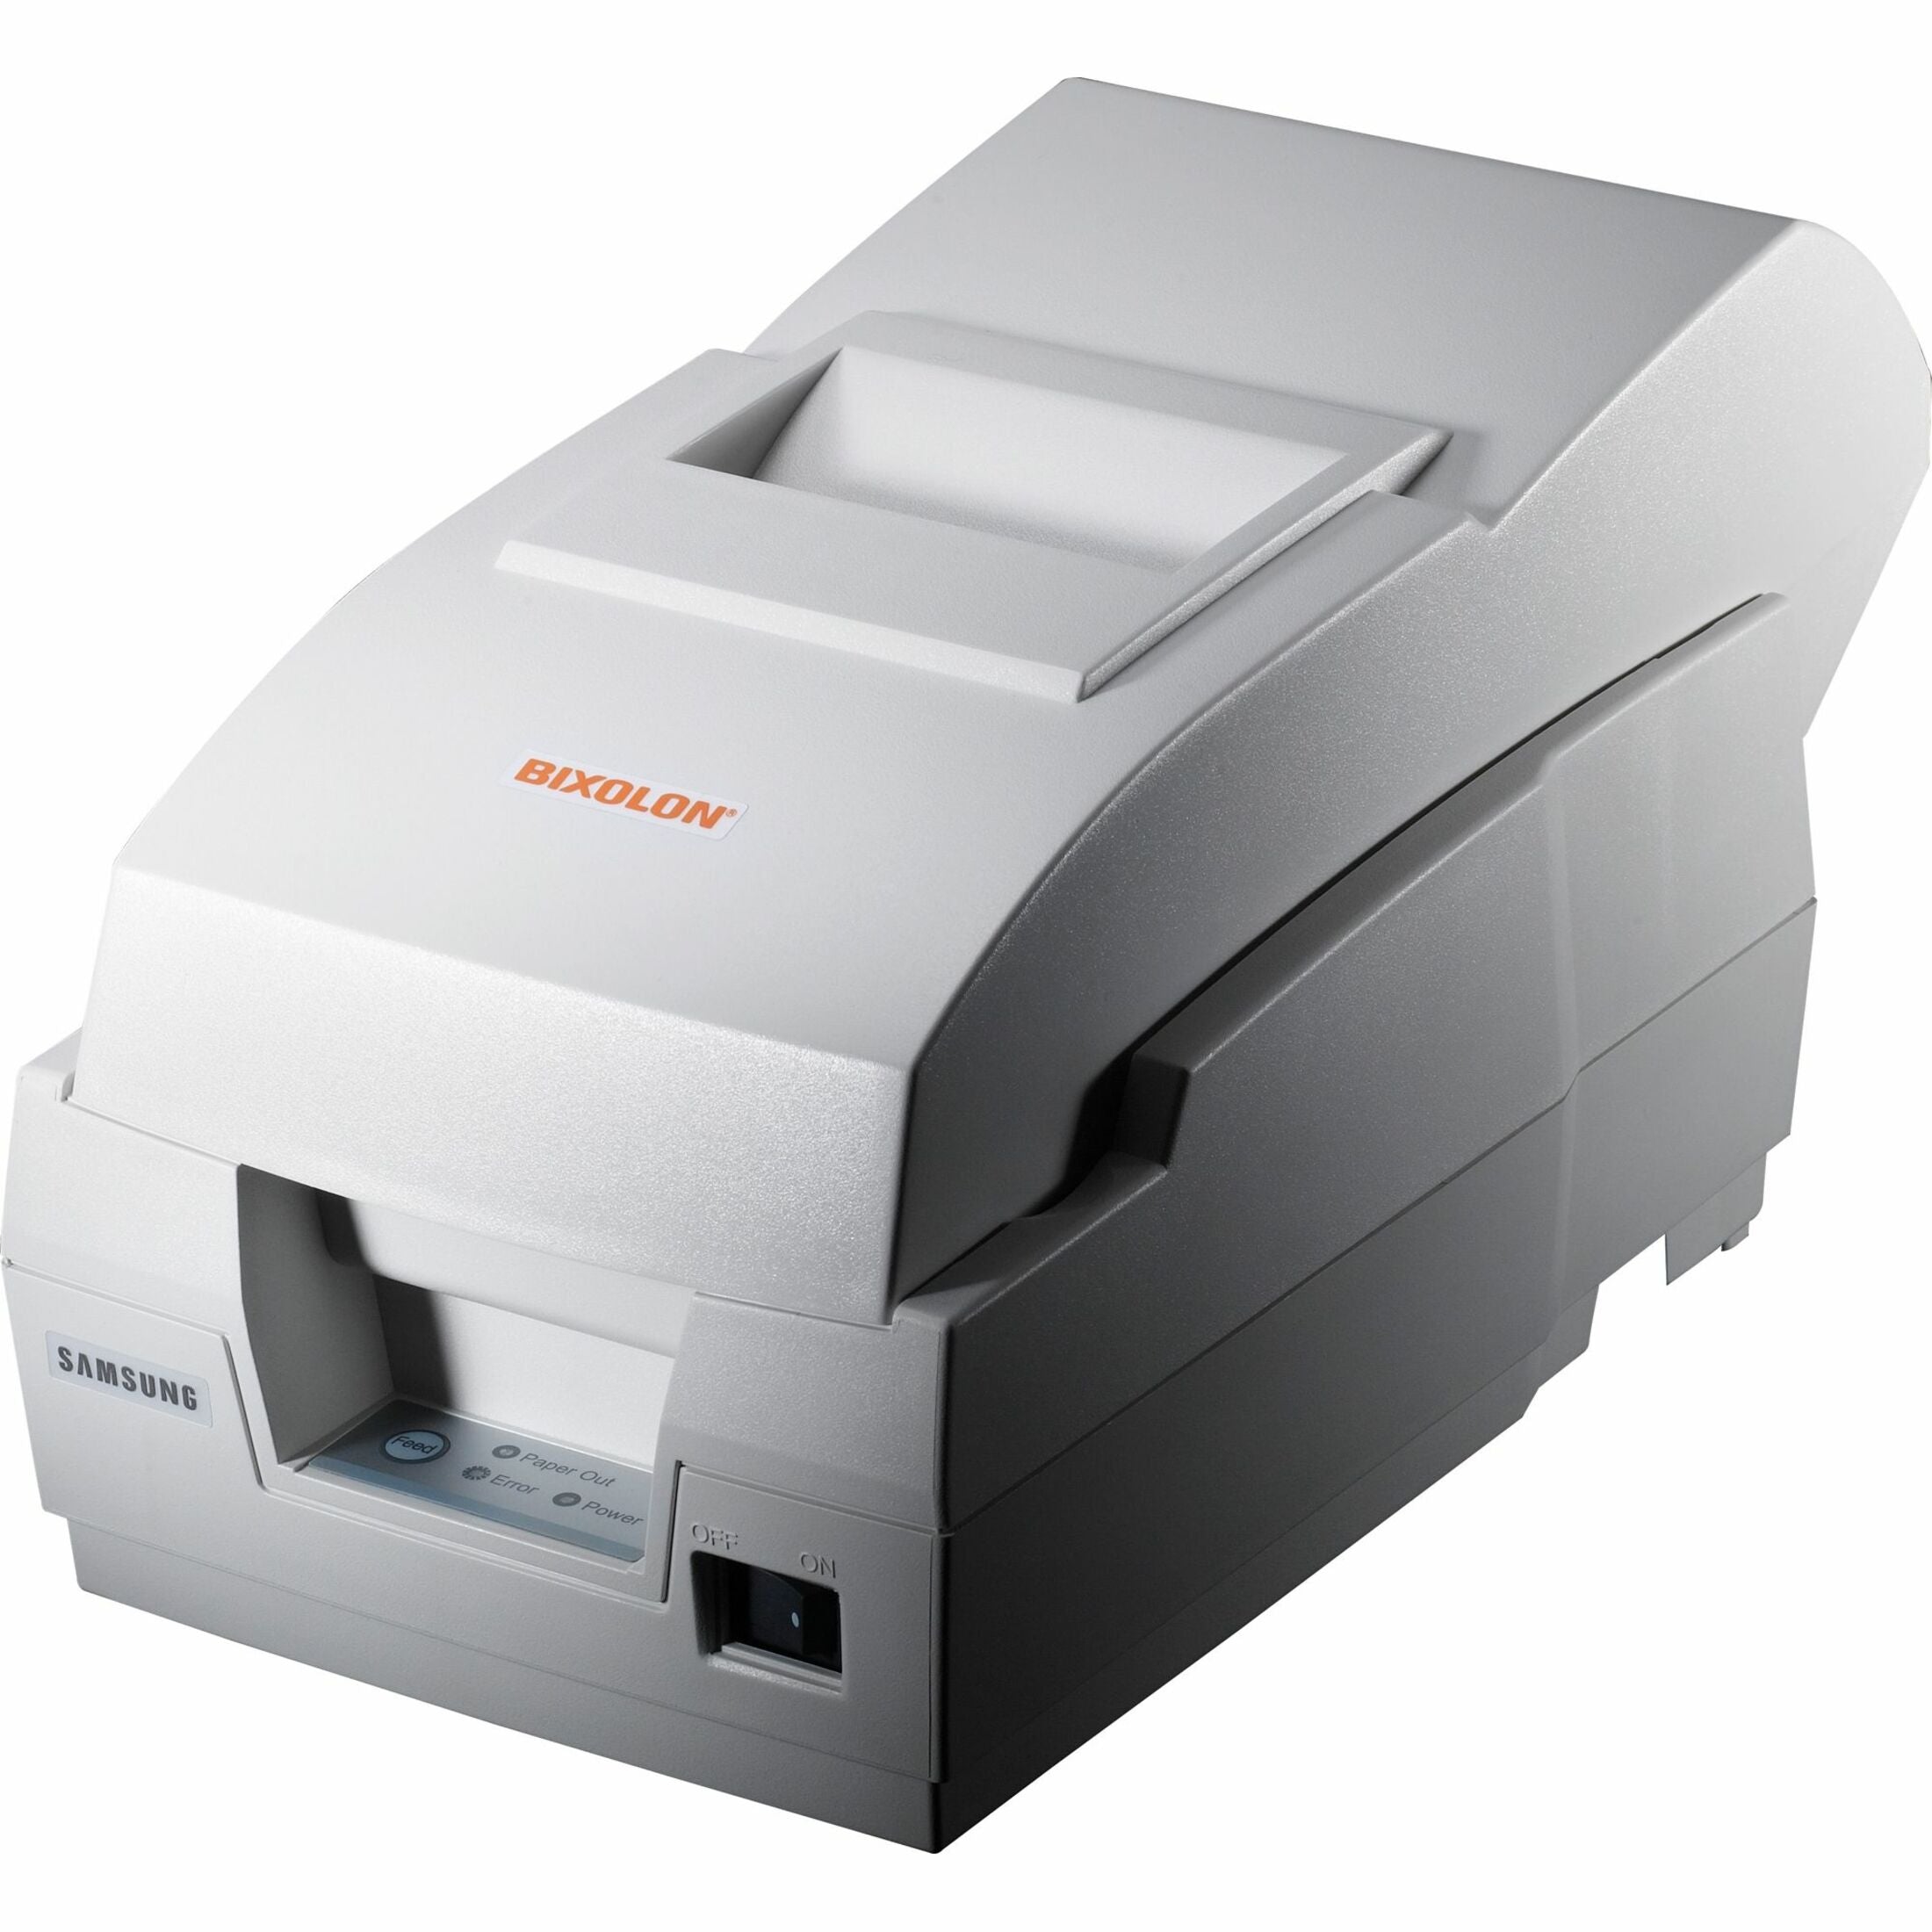 Bixolon SRP-270DG SRP-270D Receipt Printer, Monochrome, Serial, With Cutter, Gray